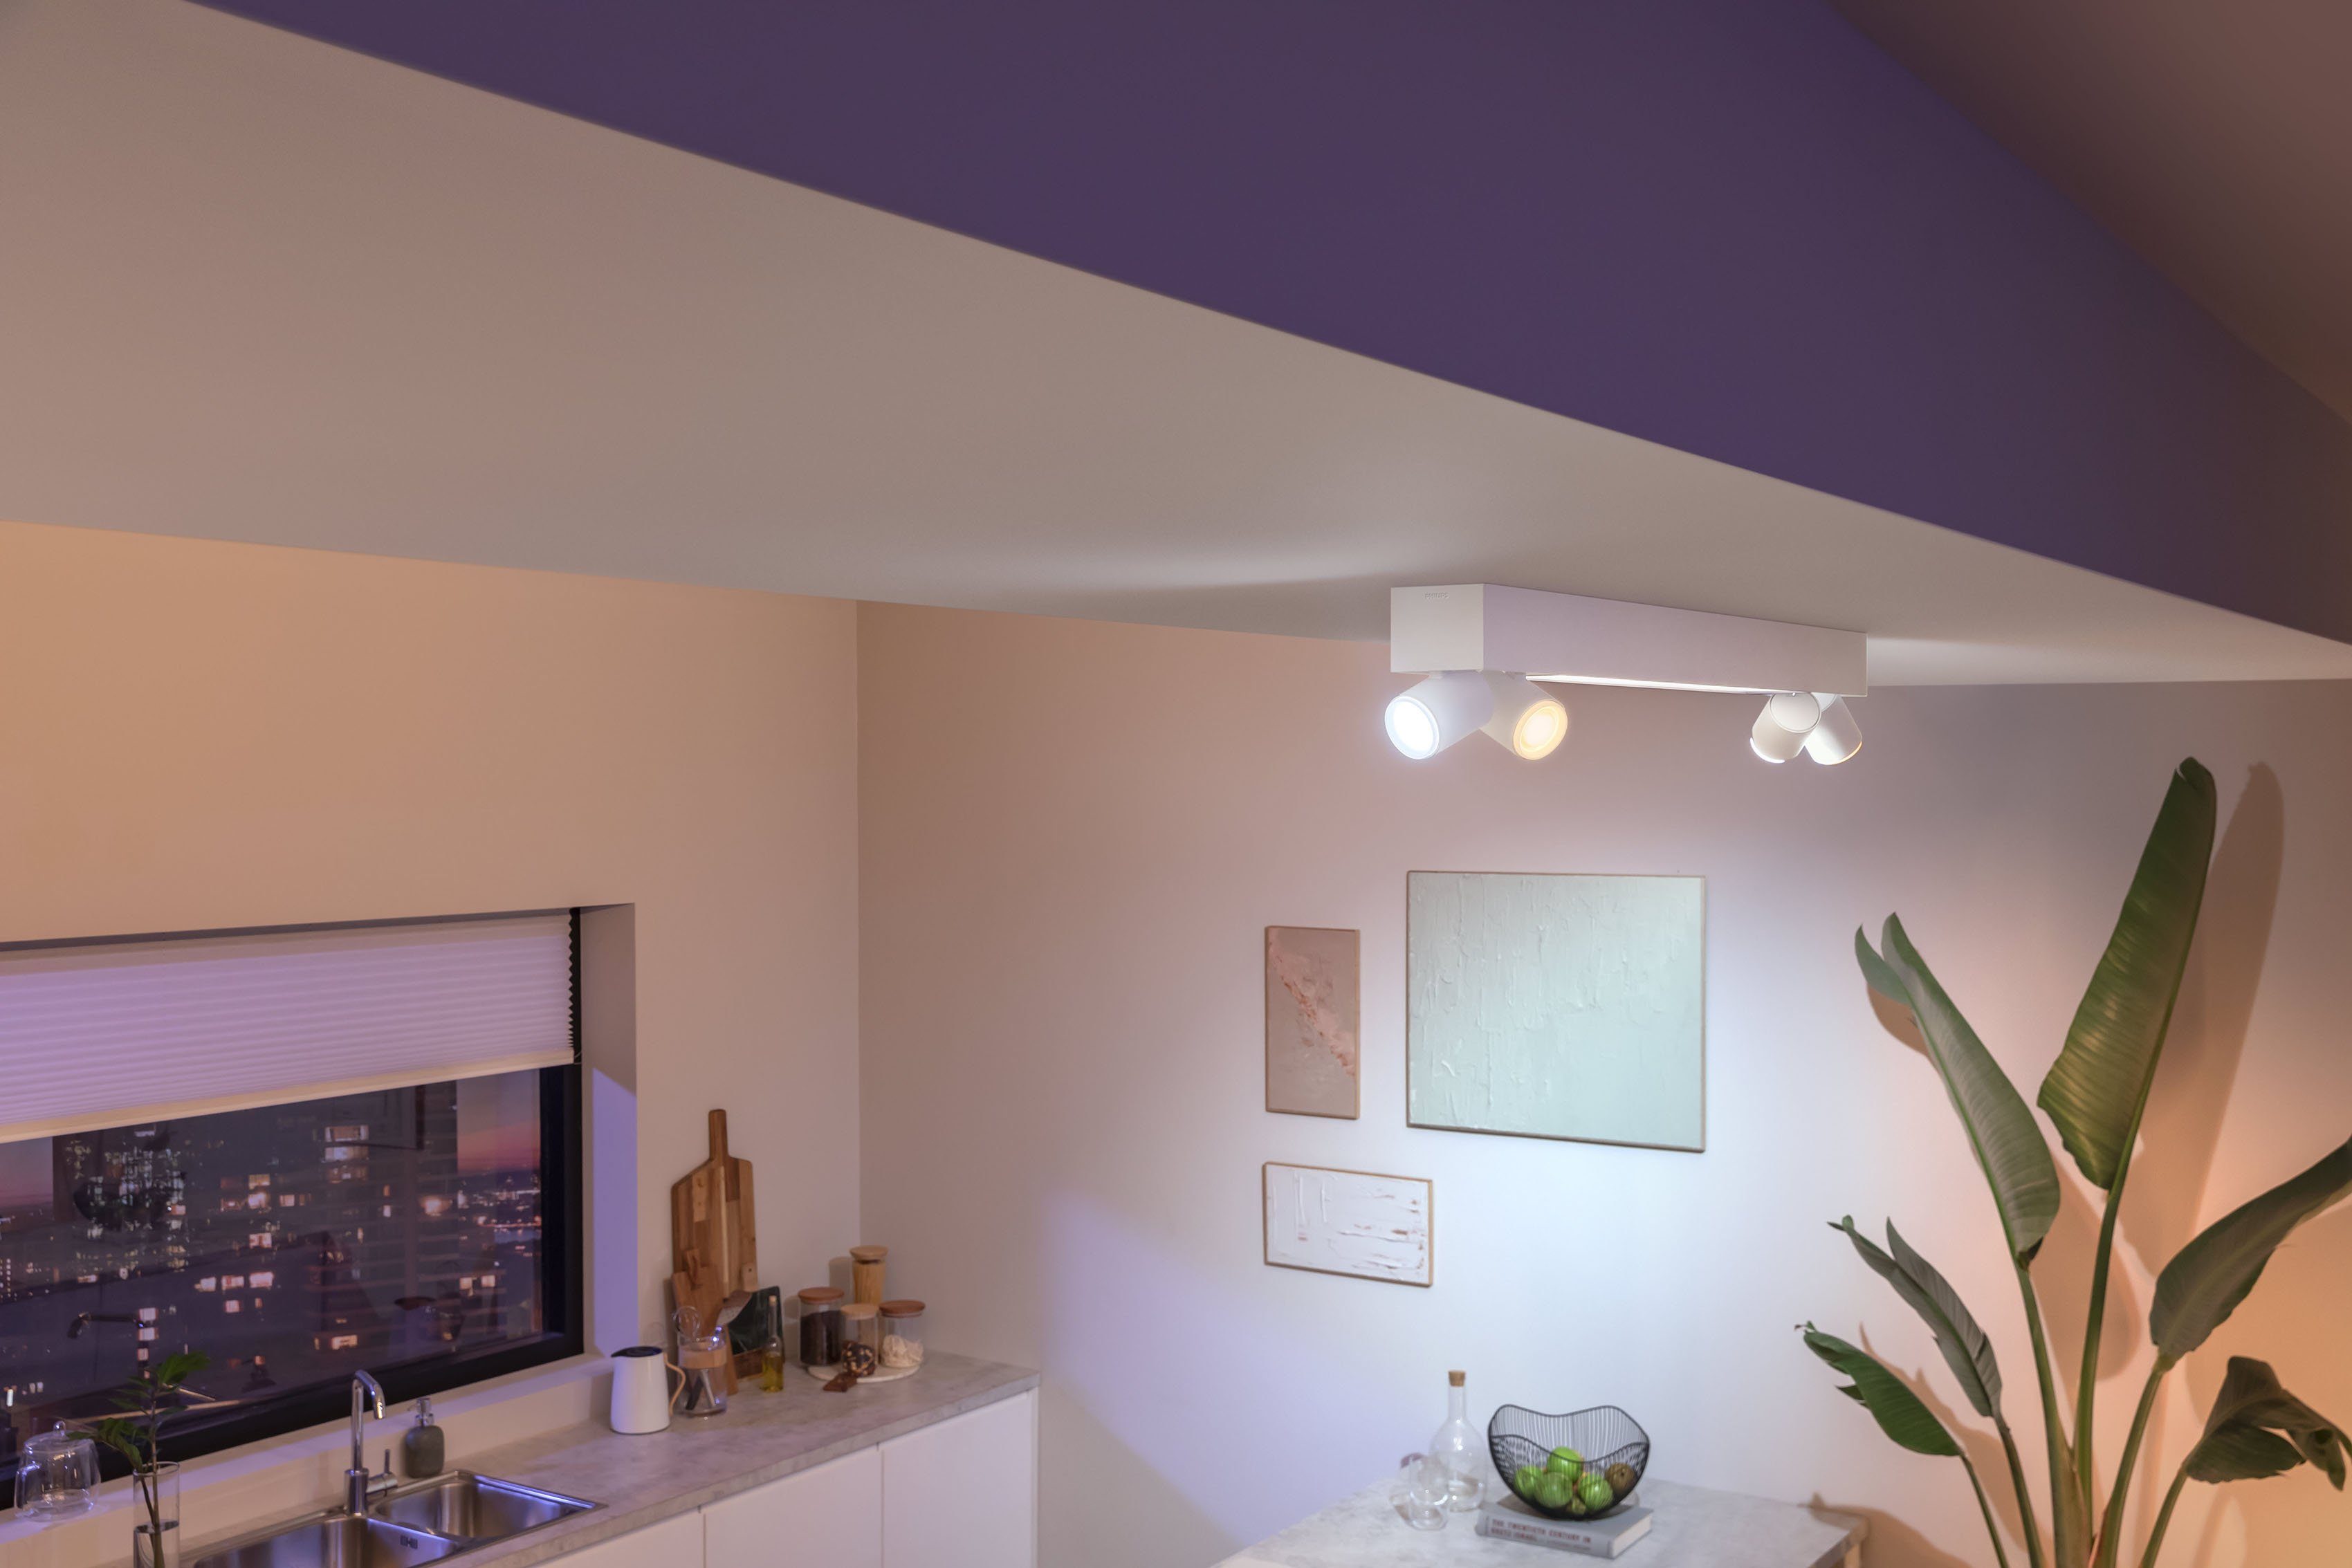 Hue Hue Philips Individ. Lampen Lampeneinstellungen LED anpassbar der einzeln LED App, Centris, Deckenspot mit wechselbar, Farbwechsler,